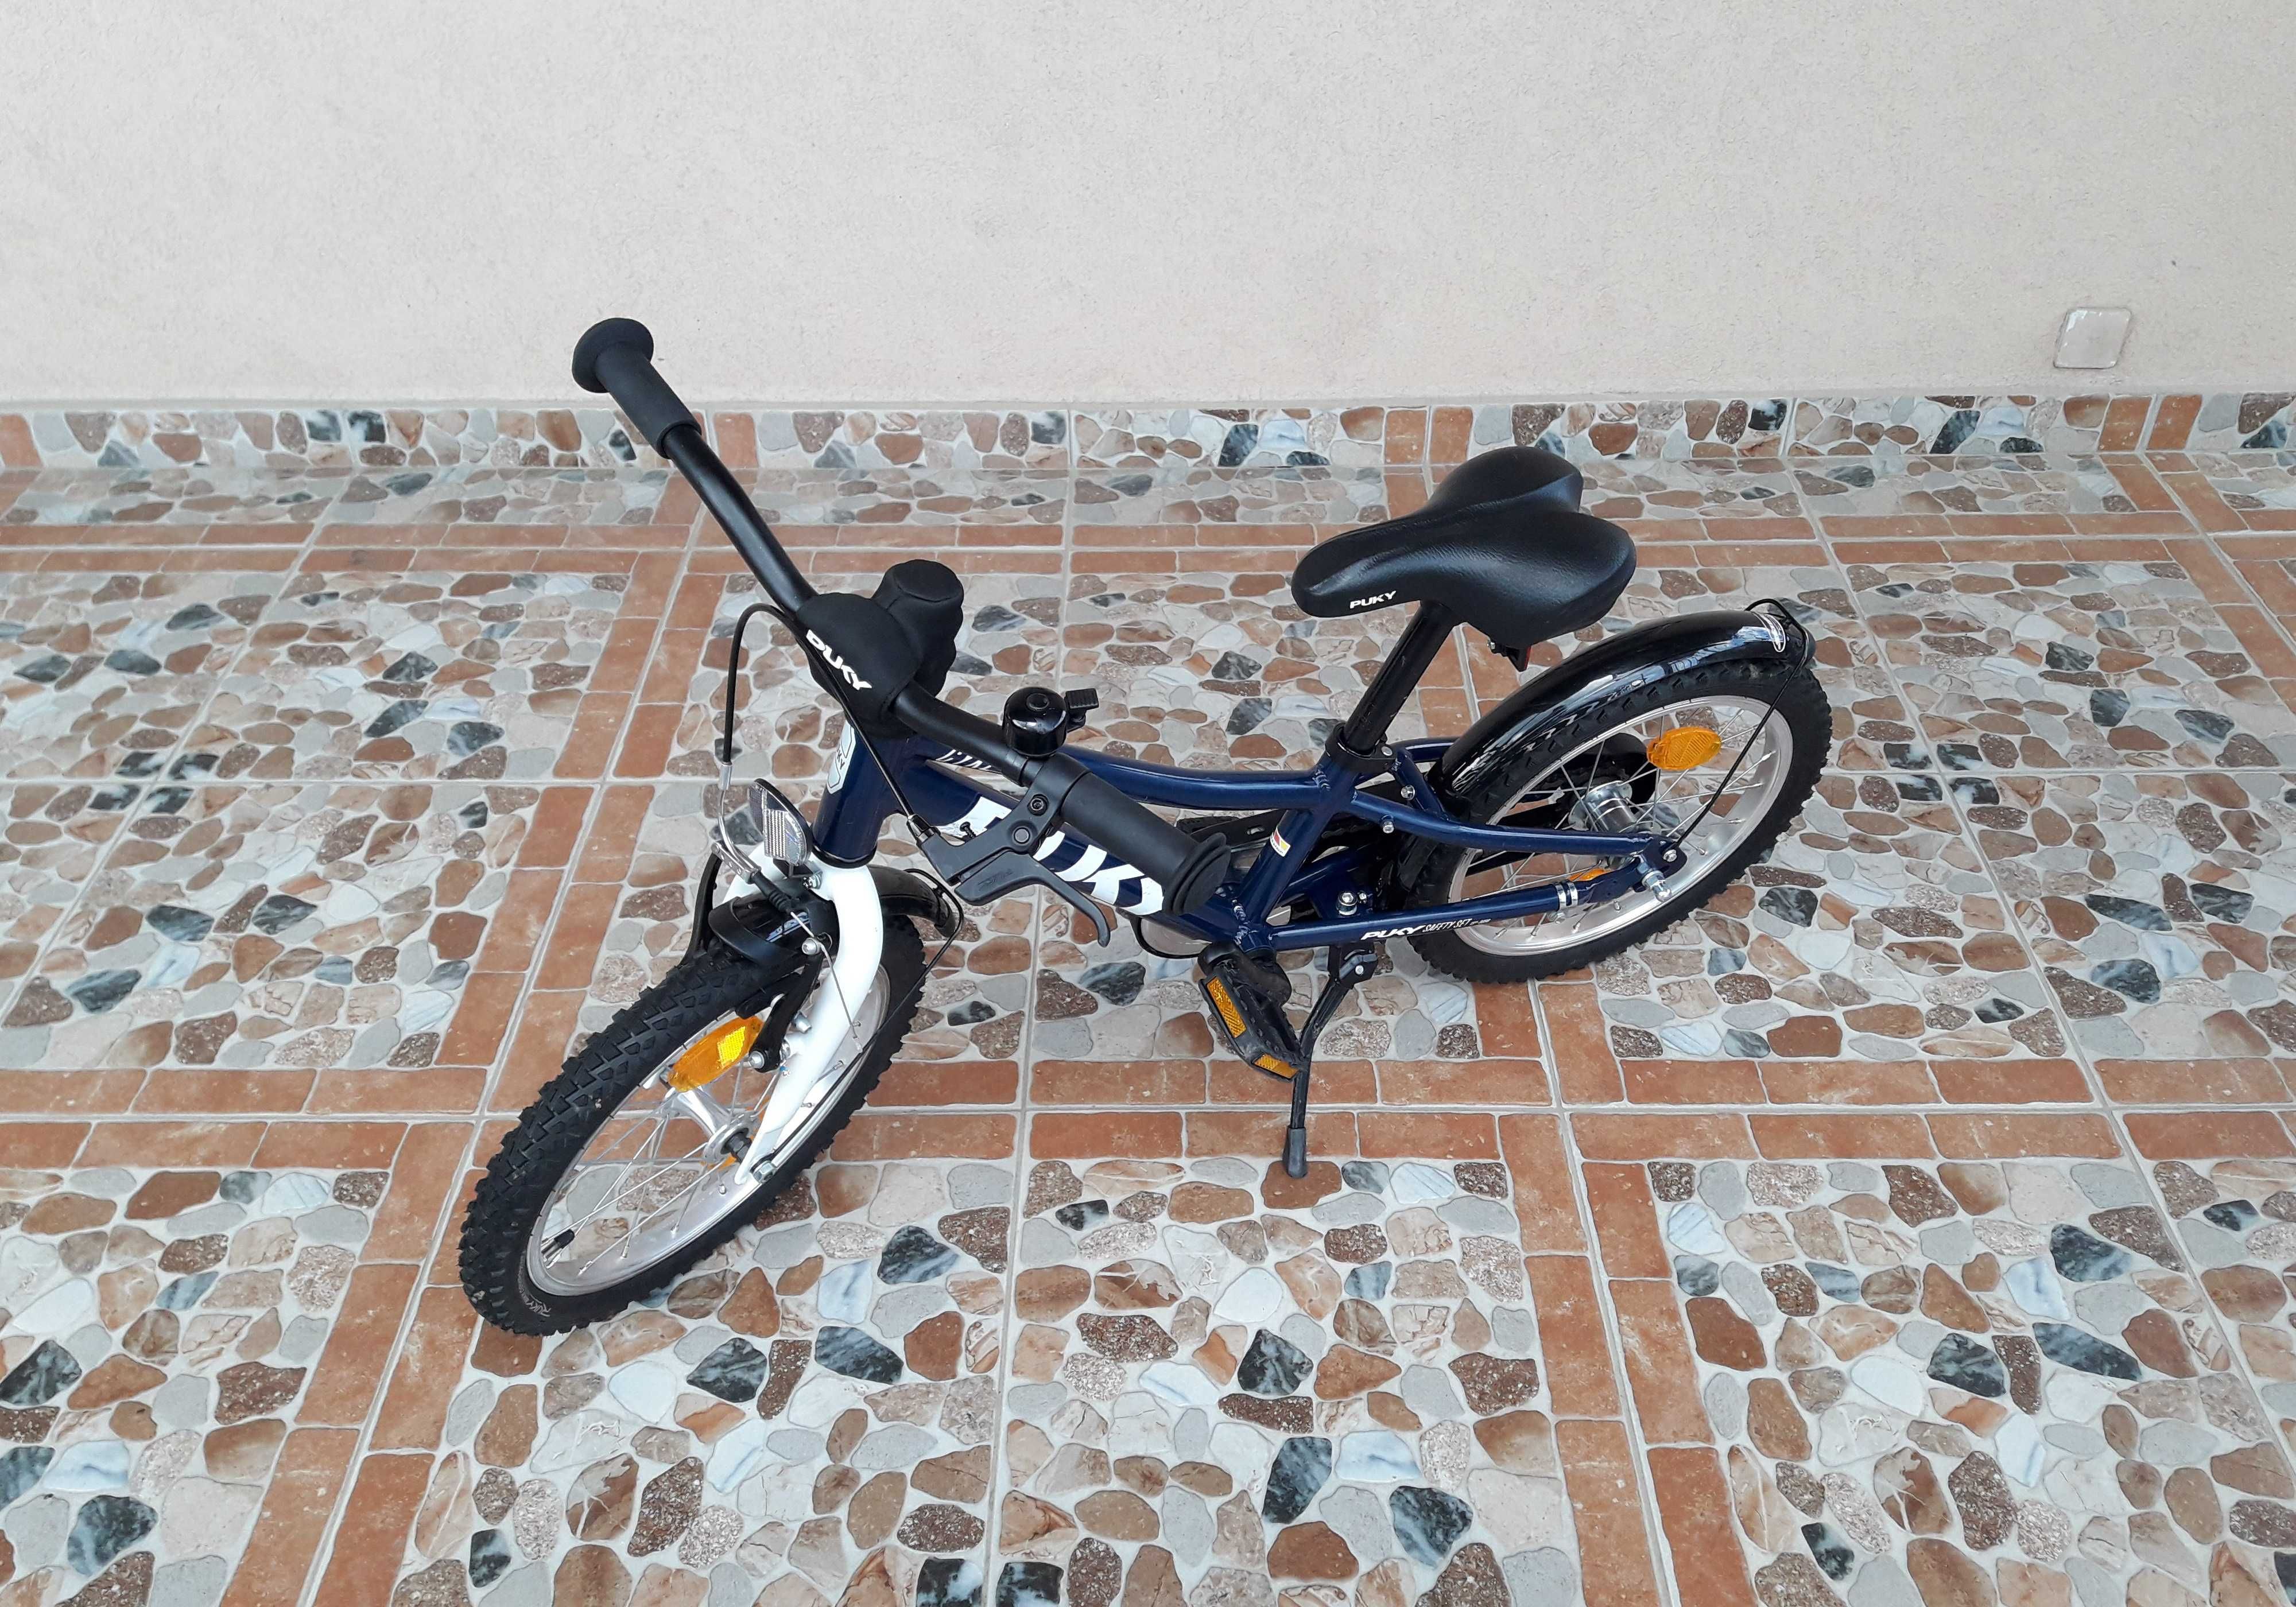 Bicicletă pentru copii 16’ PUKY CYKE 16-1, ALUMINIU – albastru